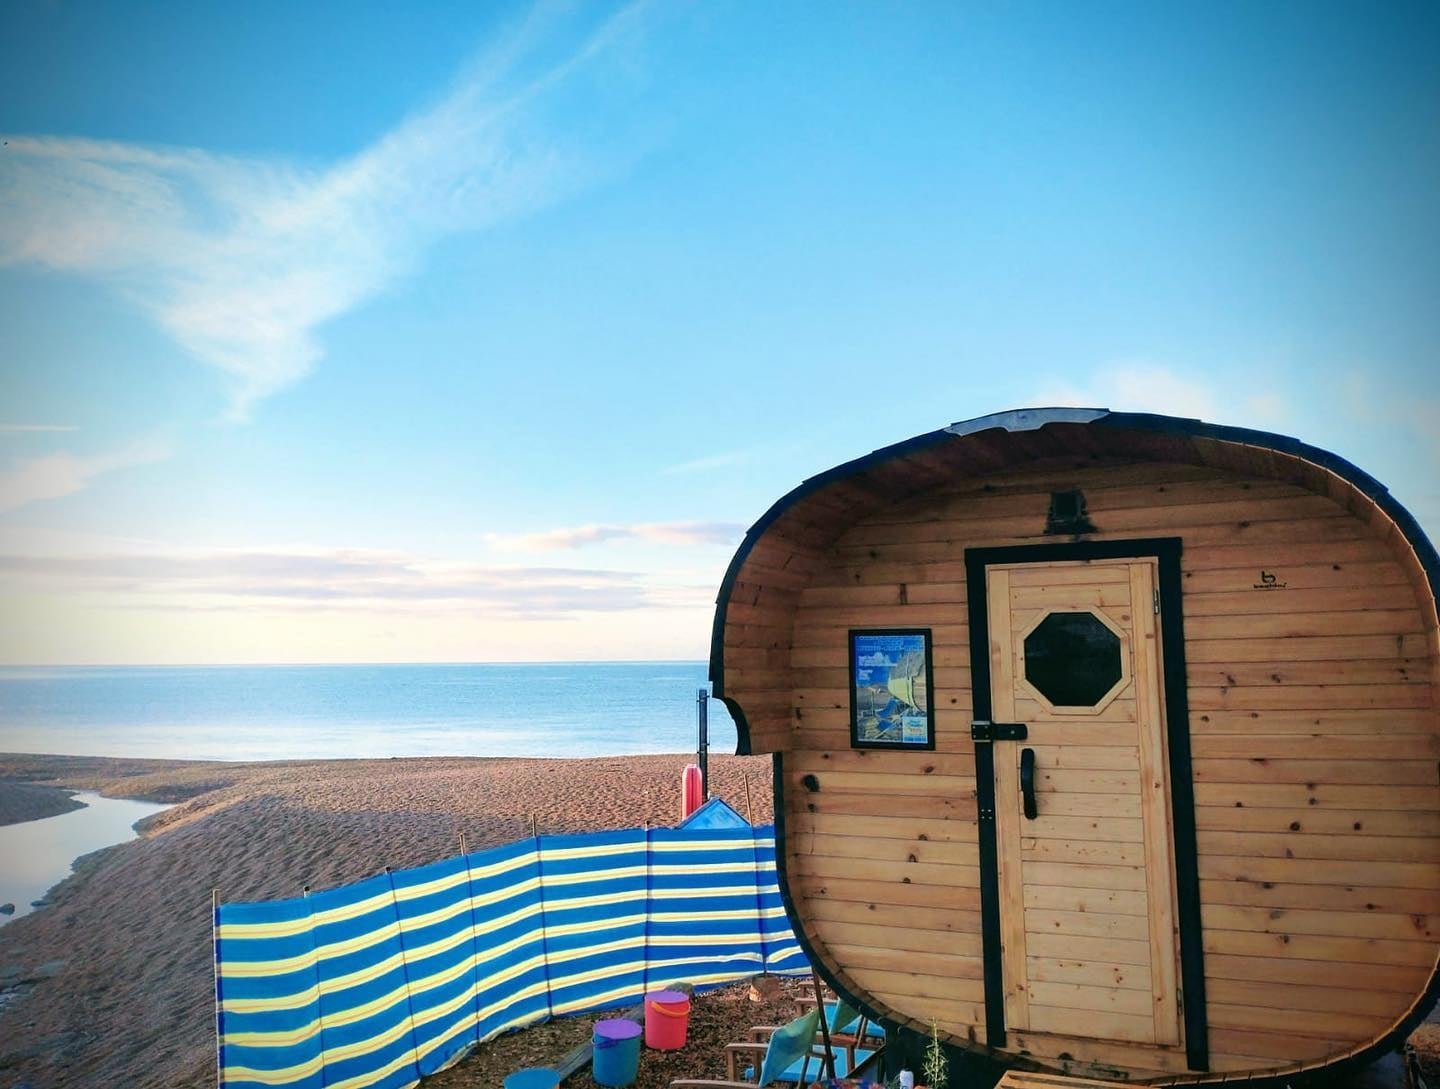 SeasideSaunaHaus beach sauna in uk